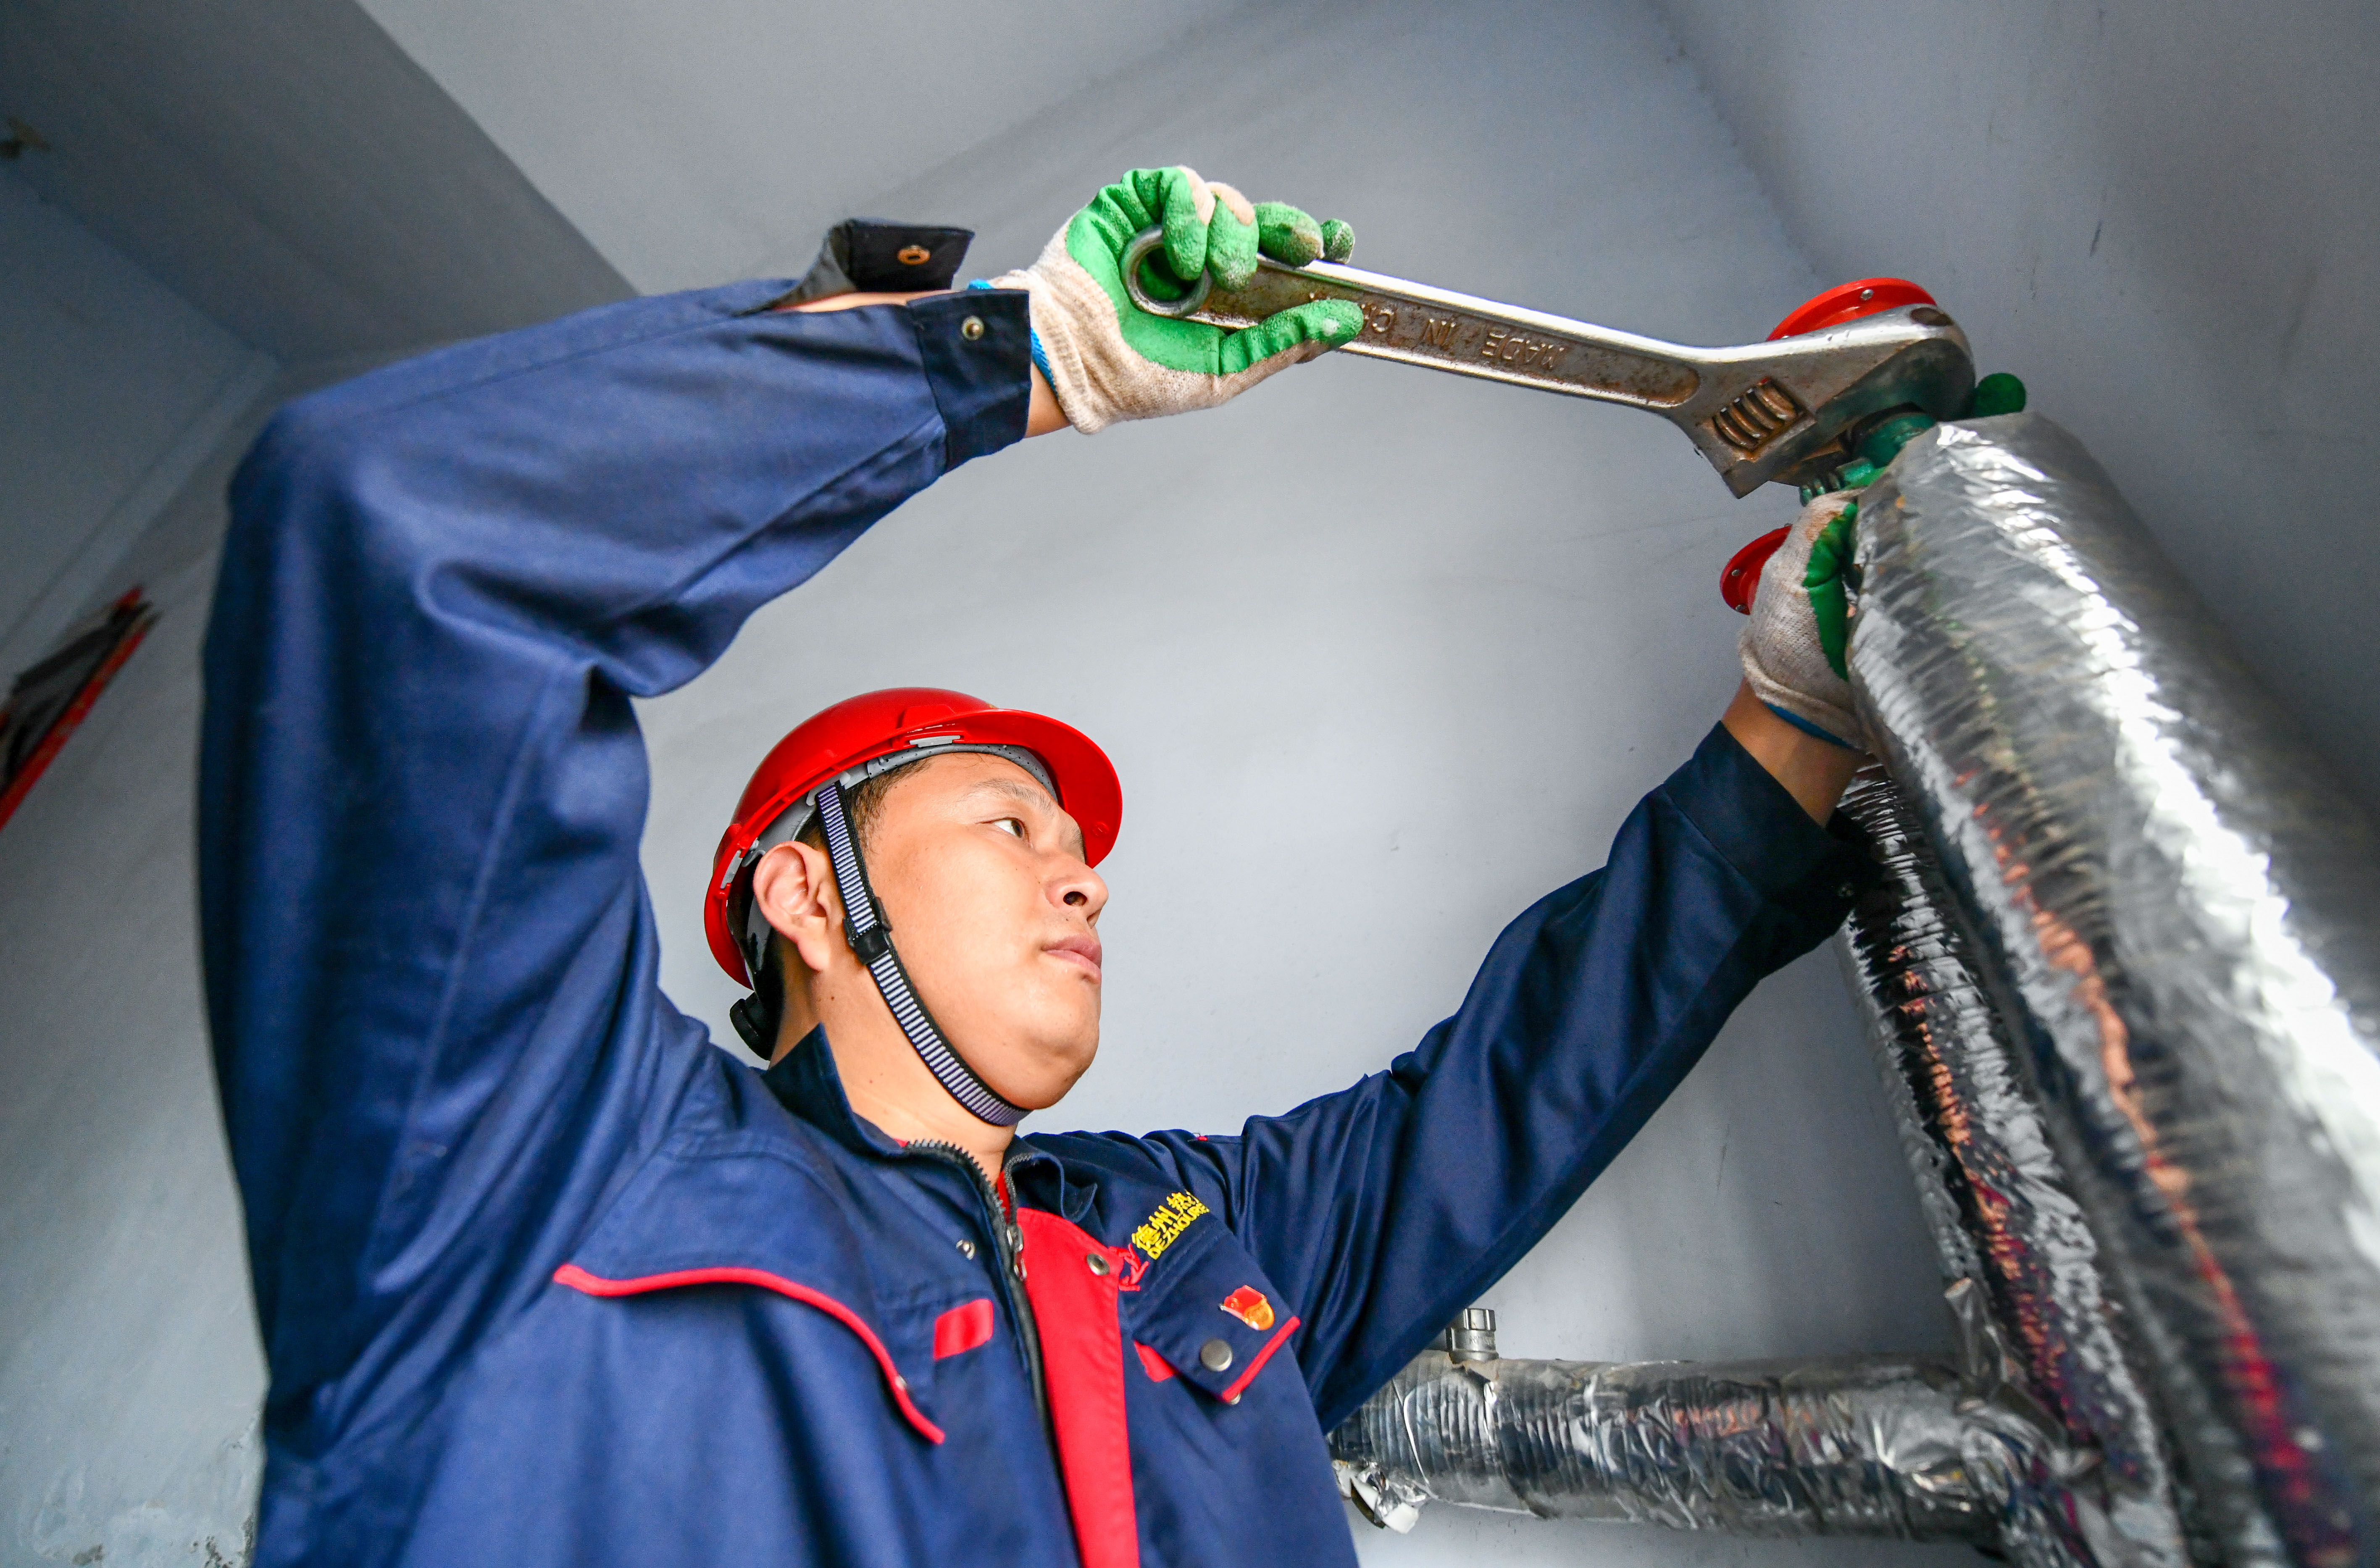 二次管网或楼道内供热设施出现问题,热力公司工作人员会立即维修处理